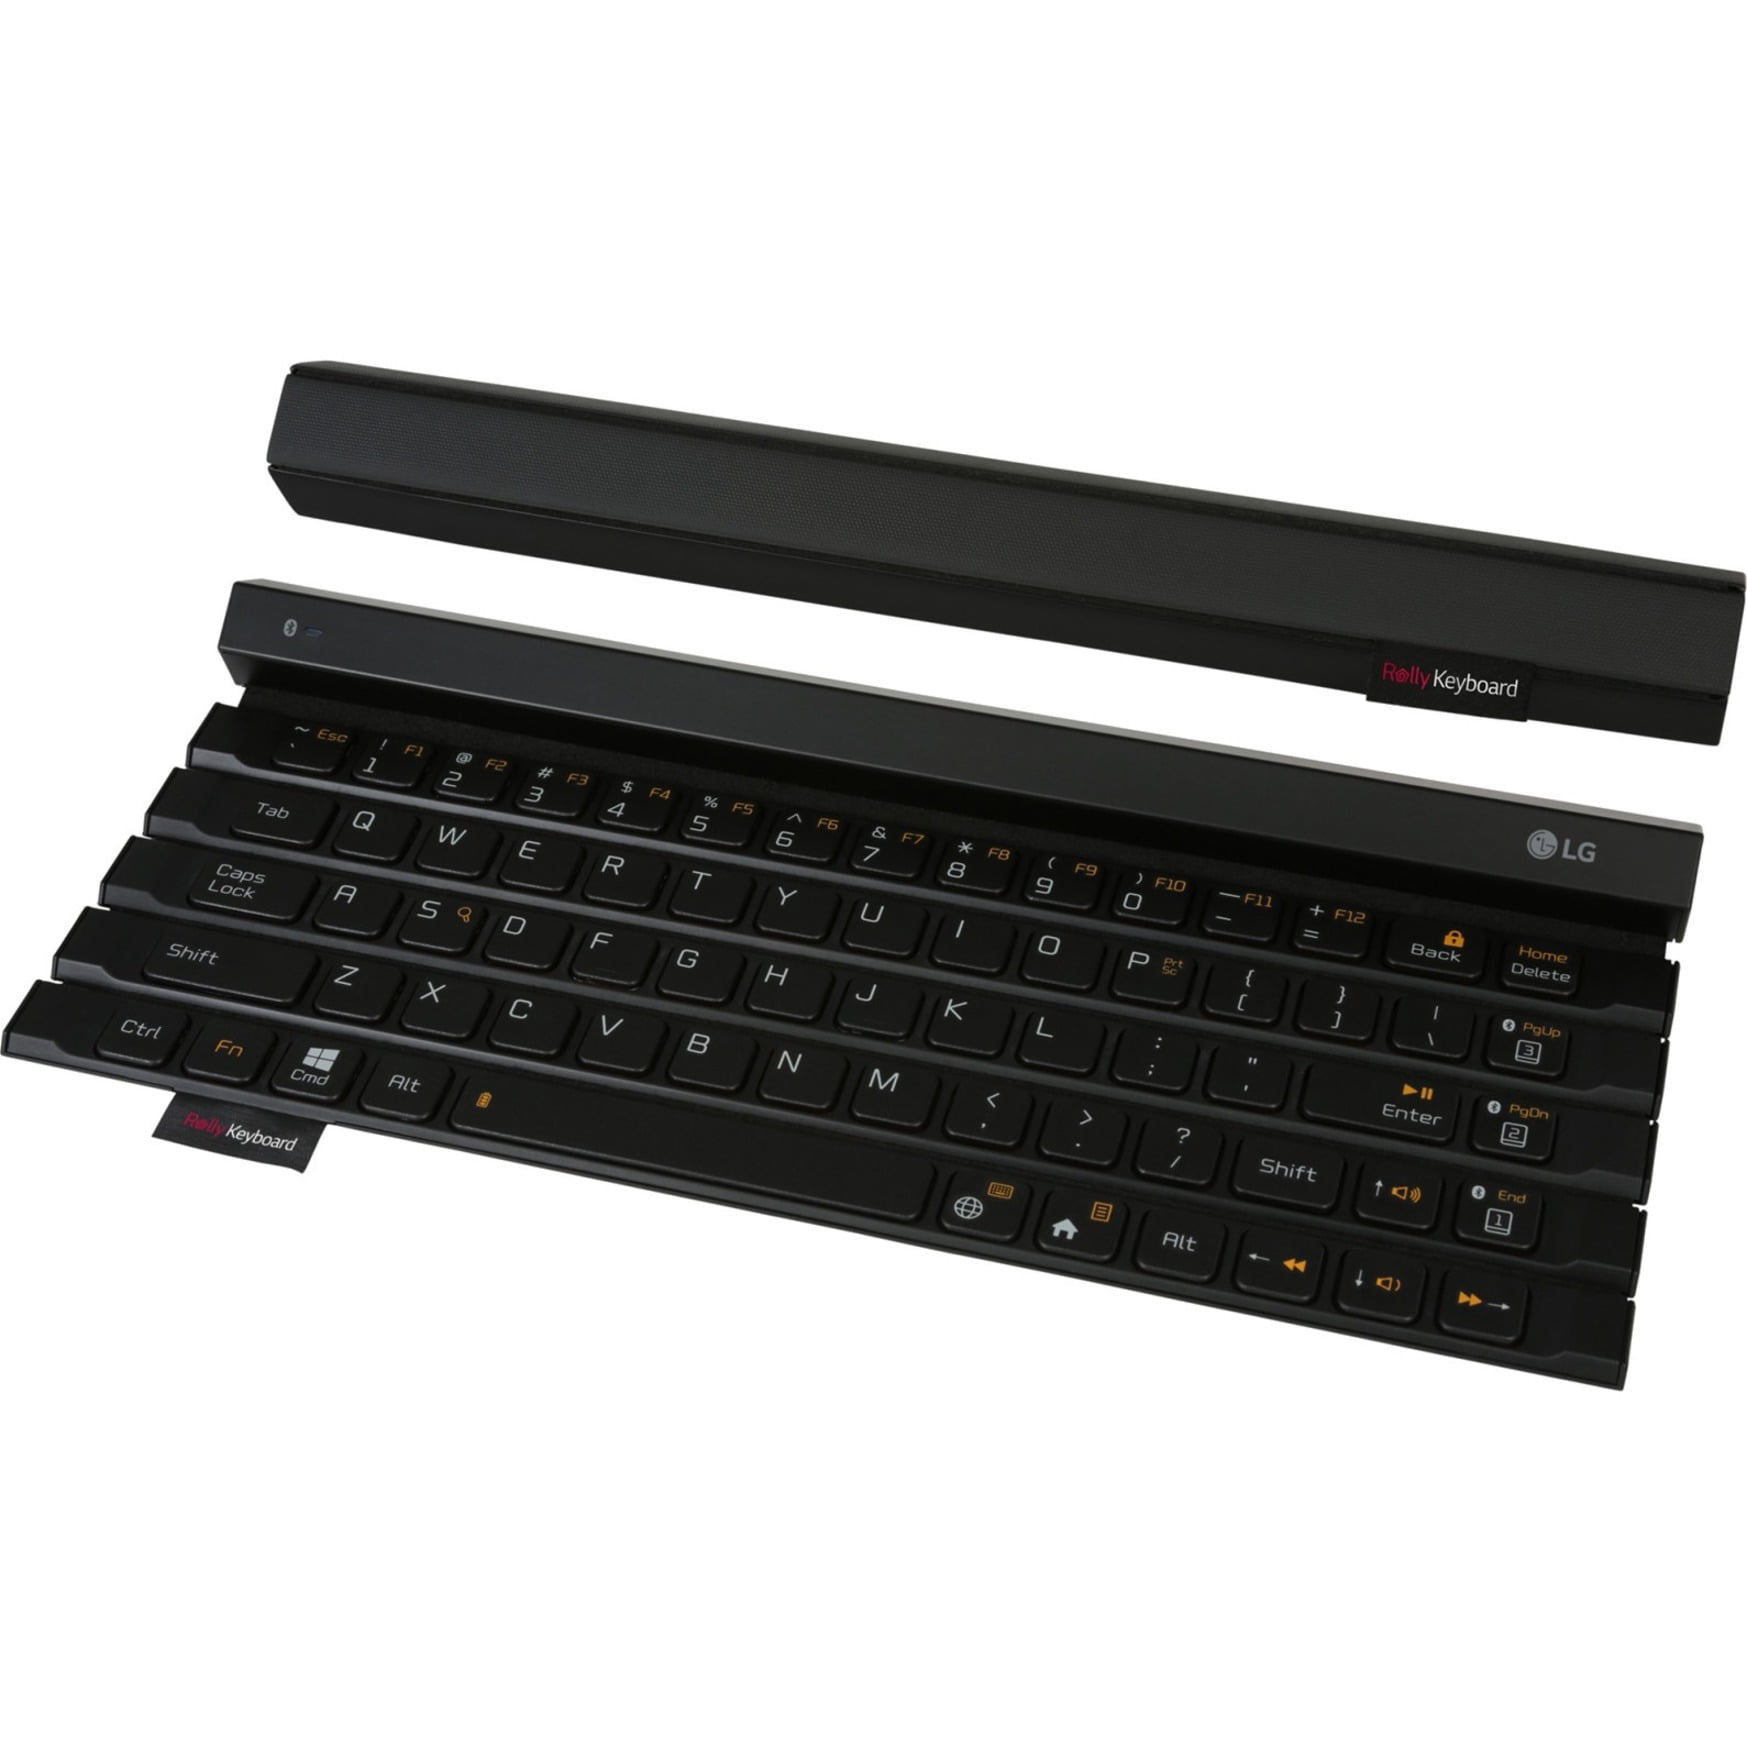 LG Rolly Keyboard, un teclado plegable de tamaño completo